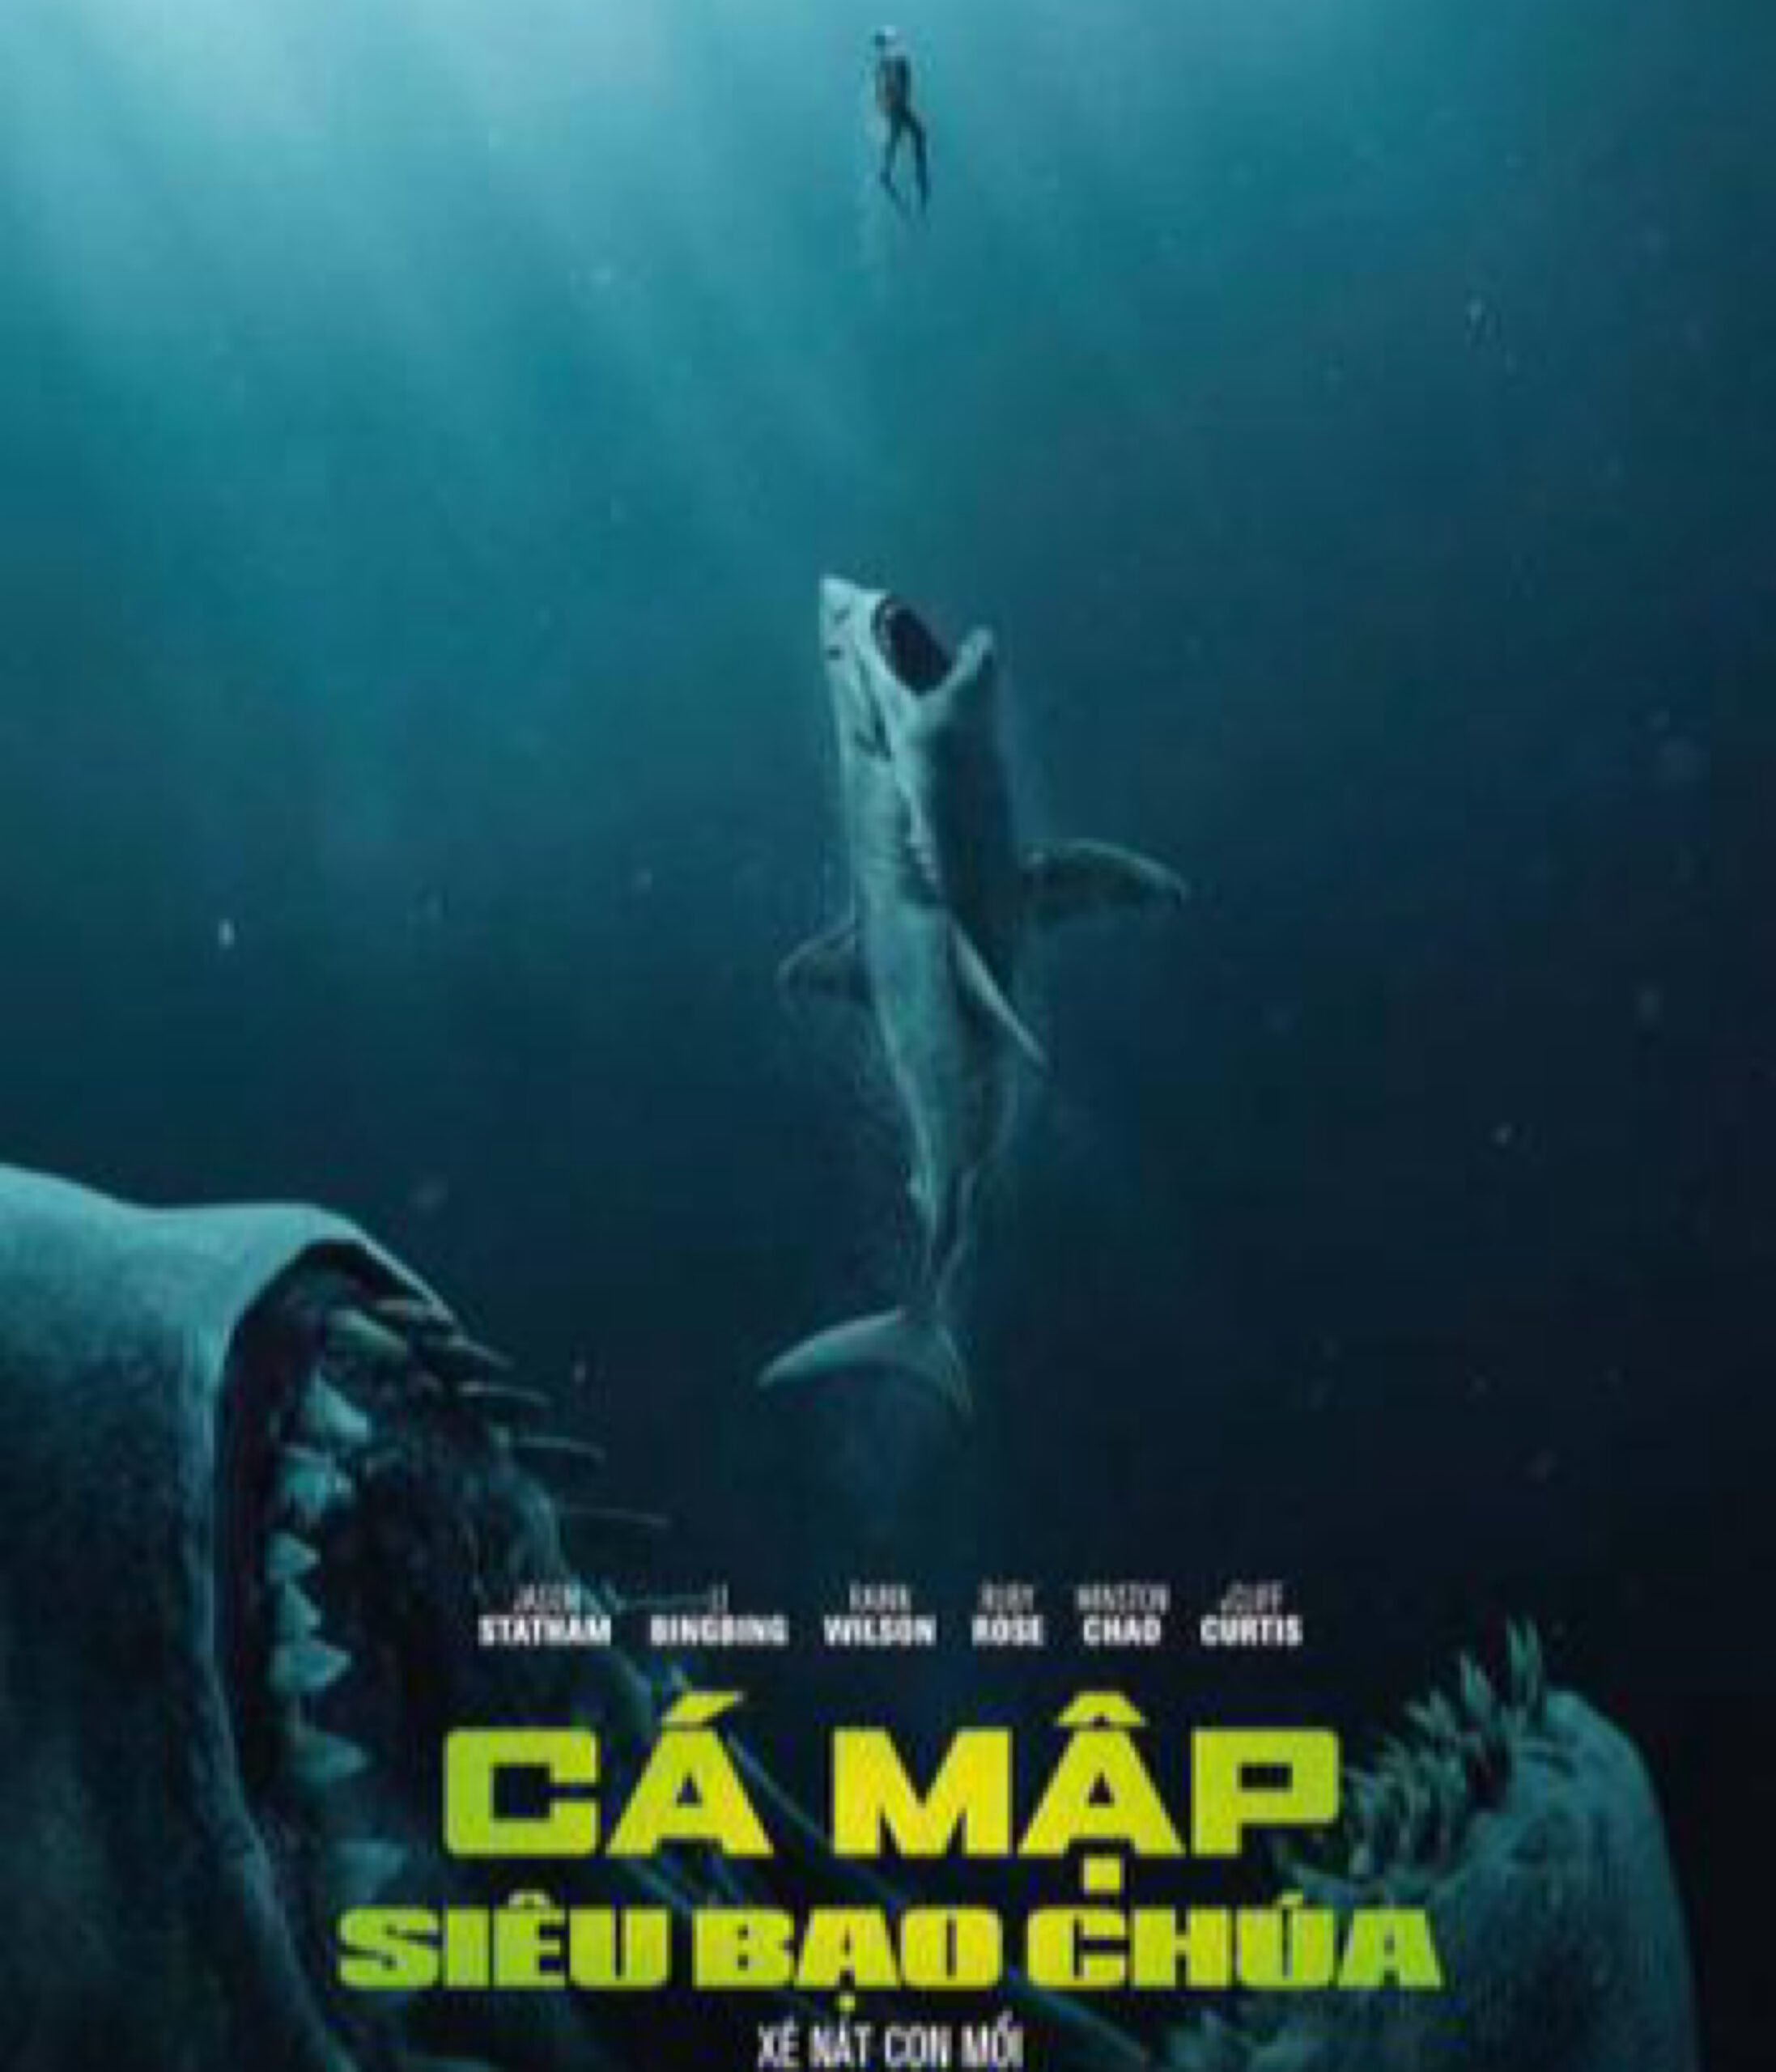 Cá mập siêu bạo chúa là bộ phim ăn khách vào năm 2018(Ảnh:Internet)